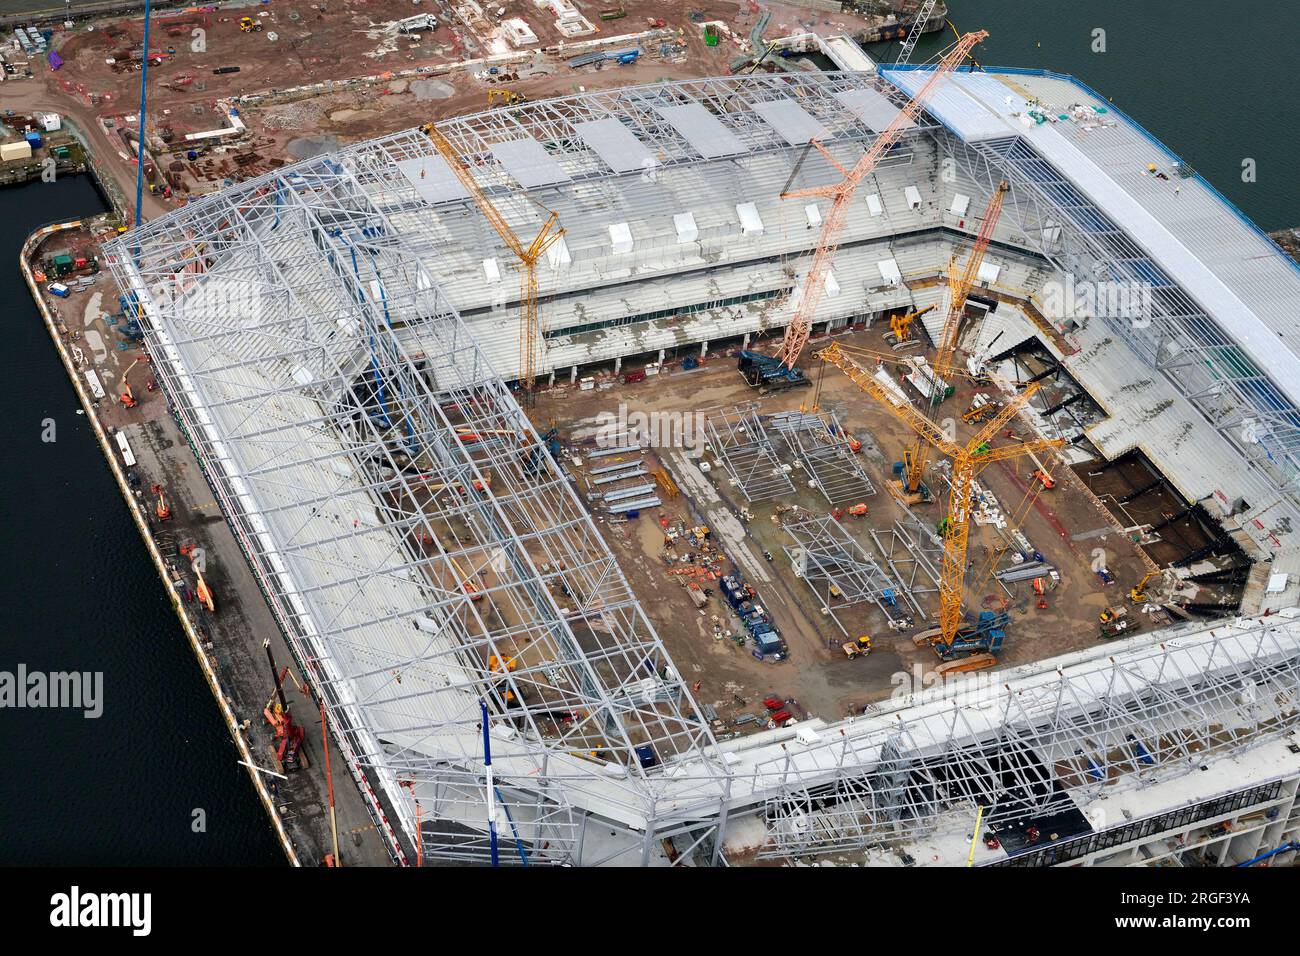 Ein Luftblick auf das neue Stadion des Everton FC, das im Bau ist, Bramley-Moore Dock, Merseyside, Nordwestengland, Großbritannien Stockfoto